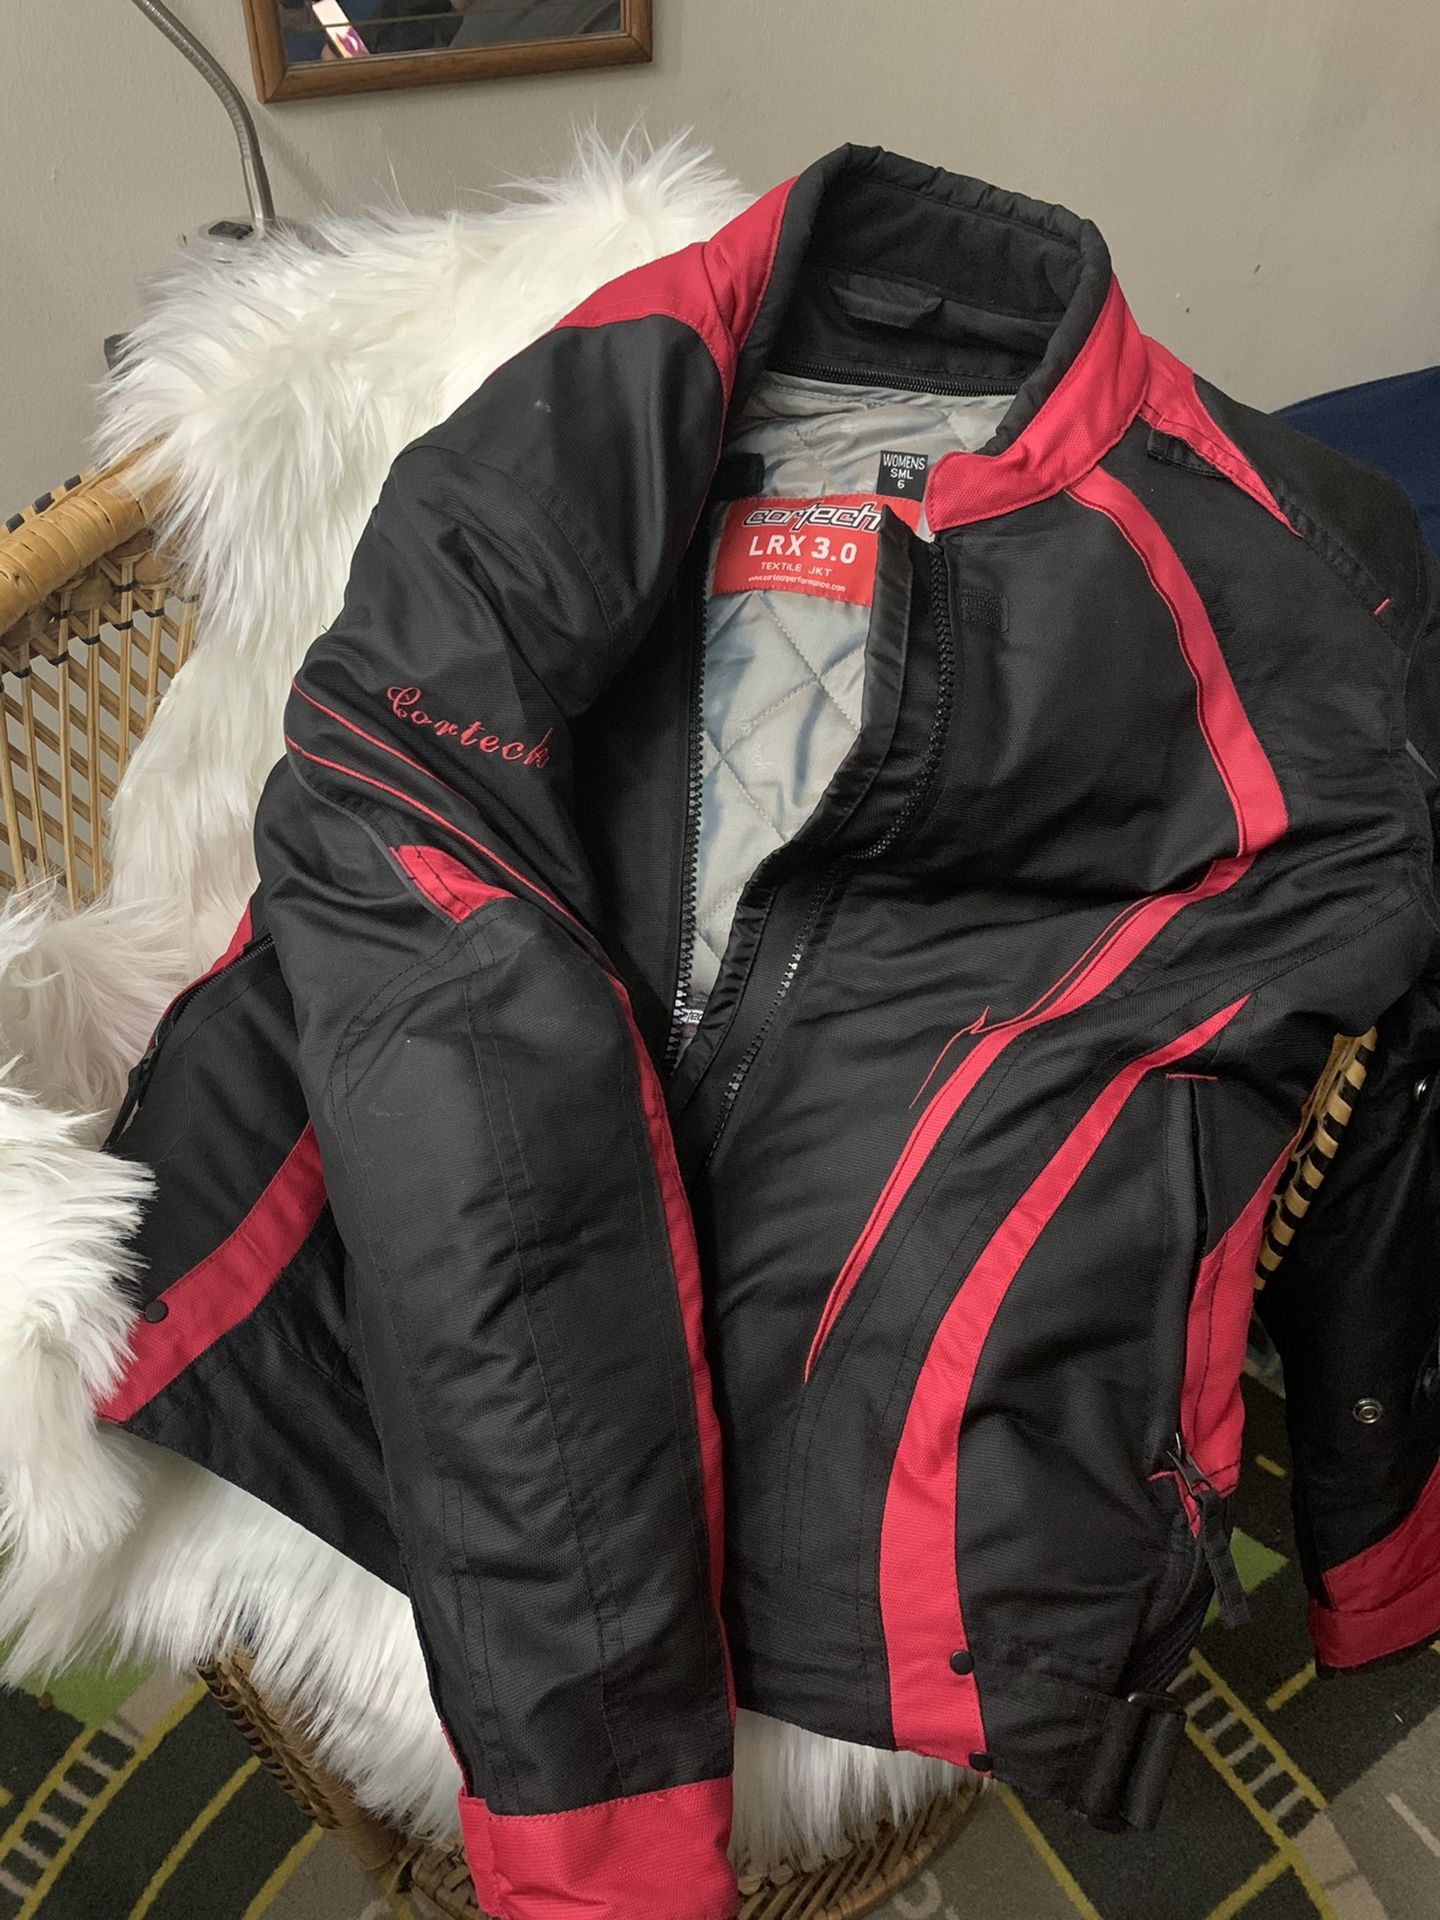 Cortech LXR 3.0 women’s jacket